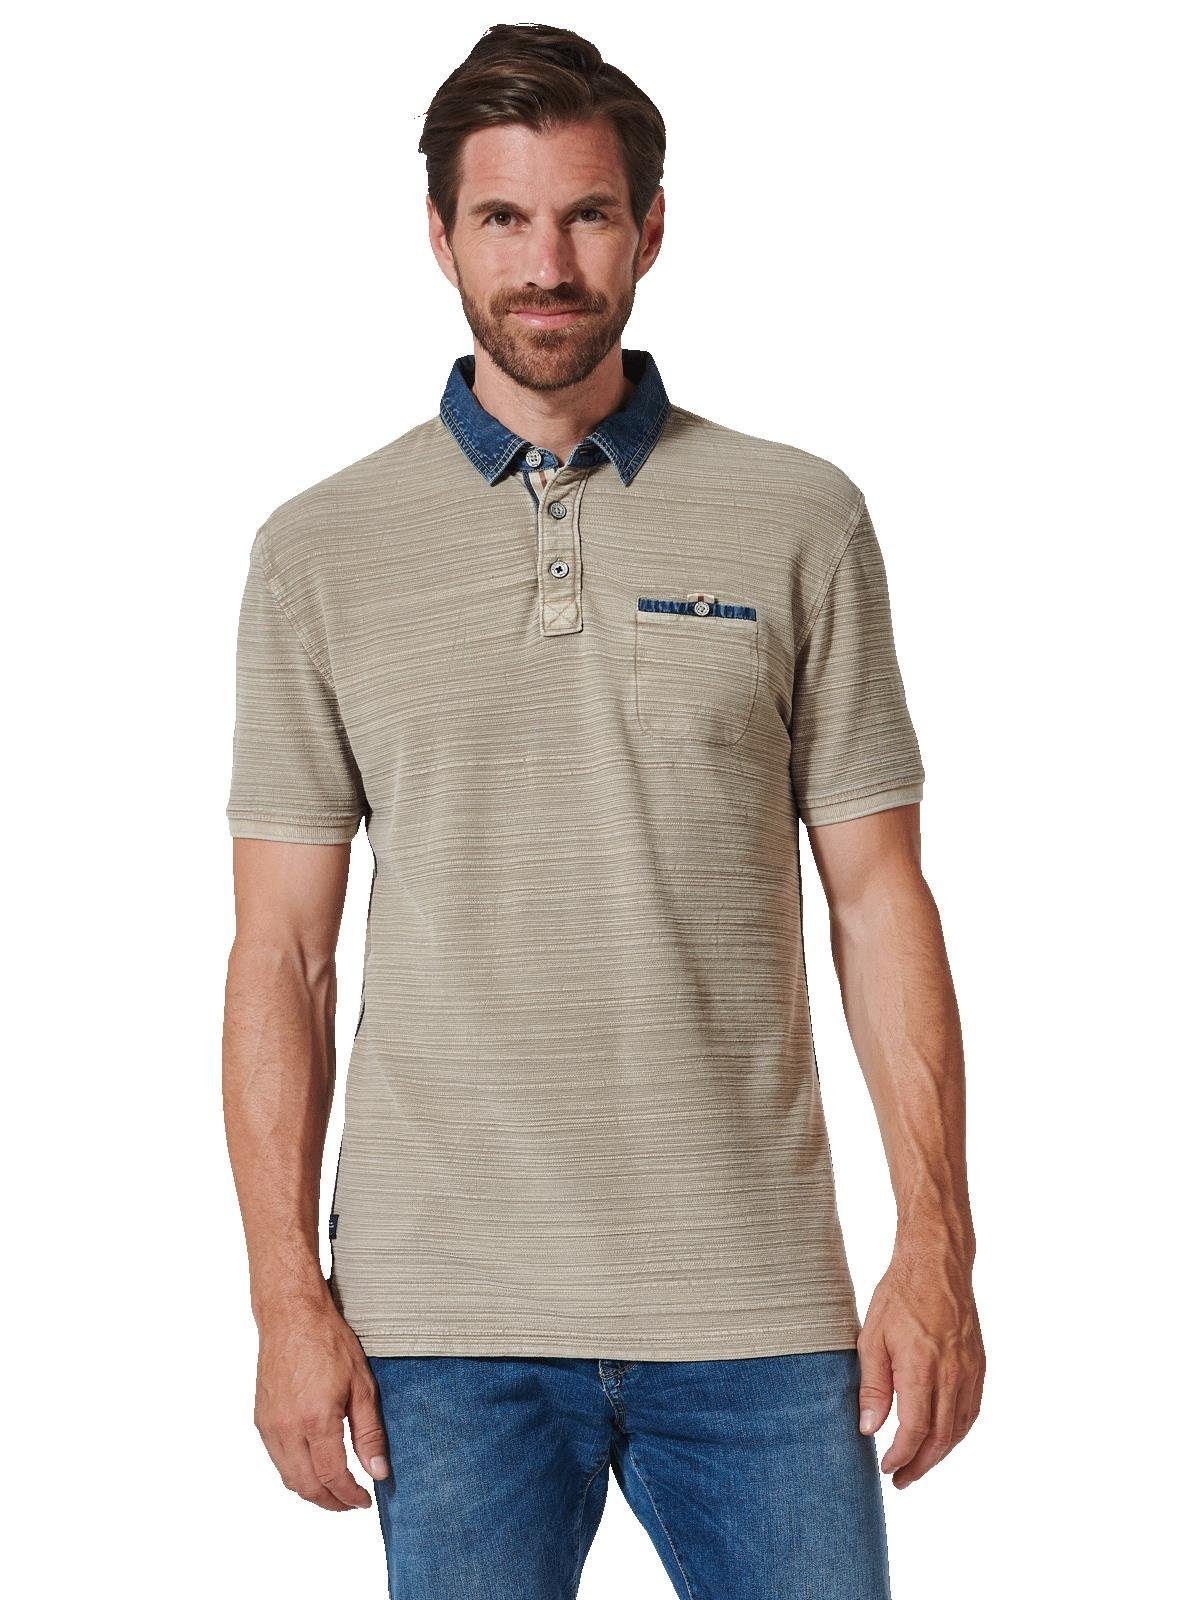 Engbers Poloshirt Polo-Shirt strukturiert, reines Baumwollmaterial sorgt  für optimalen Tragekomfort